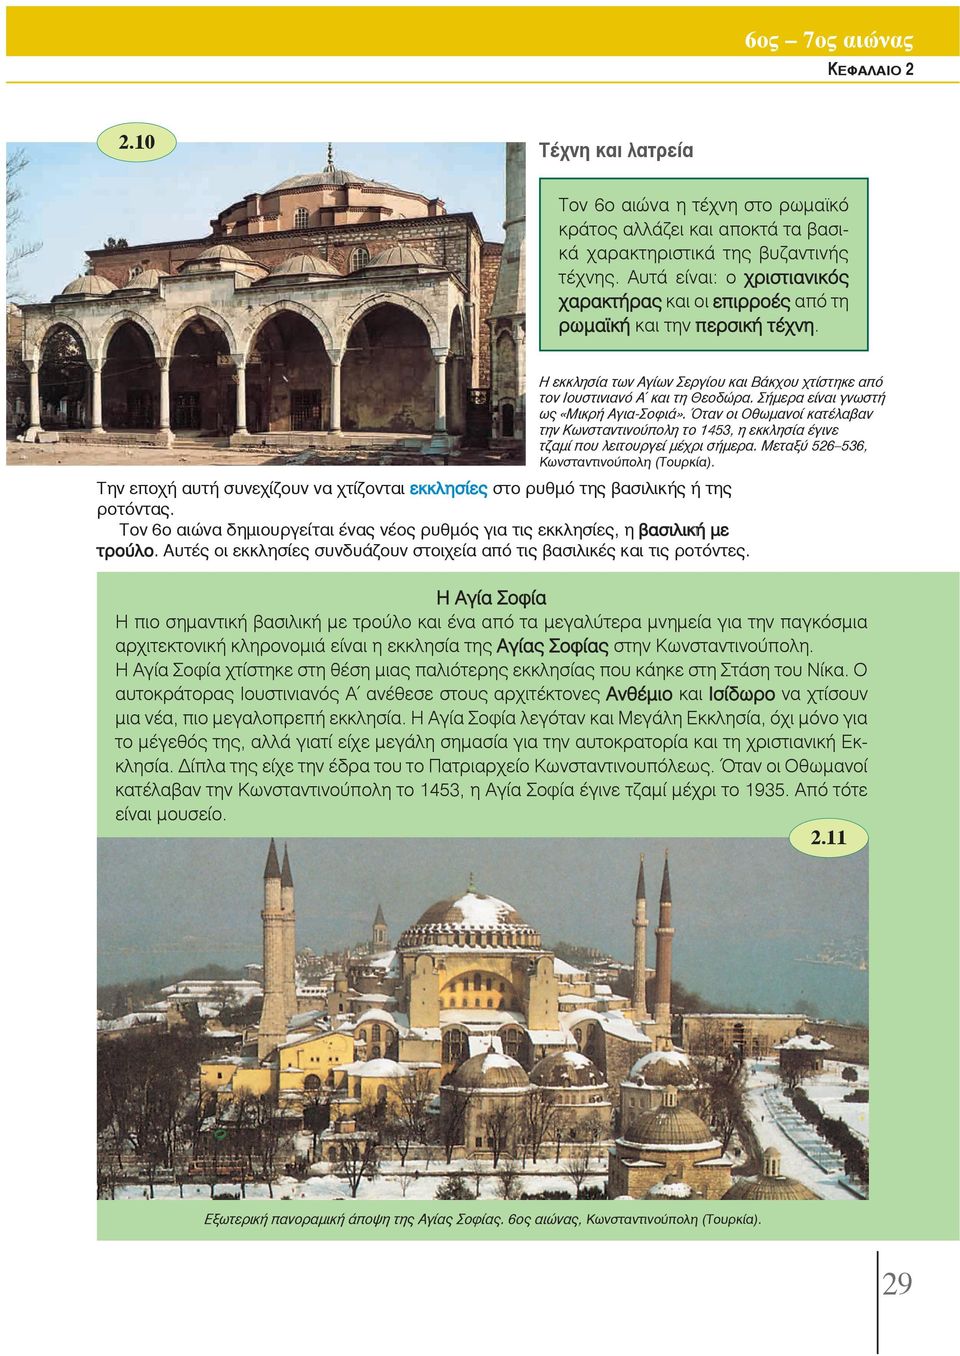 Σήμερα είναι γνωστή ως «Μικρή Αγια-Σοφιά». Όταν οι Οθωμανοί κατέλαβαν την Κωνσταντινούπολη το 1453, η εκκλησία έγινε τζαμί που λειτουργεί μέχρι σήμερα. Μεταξύ 526 536, Κωνσταντινούπολη (Tουρκία).